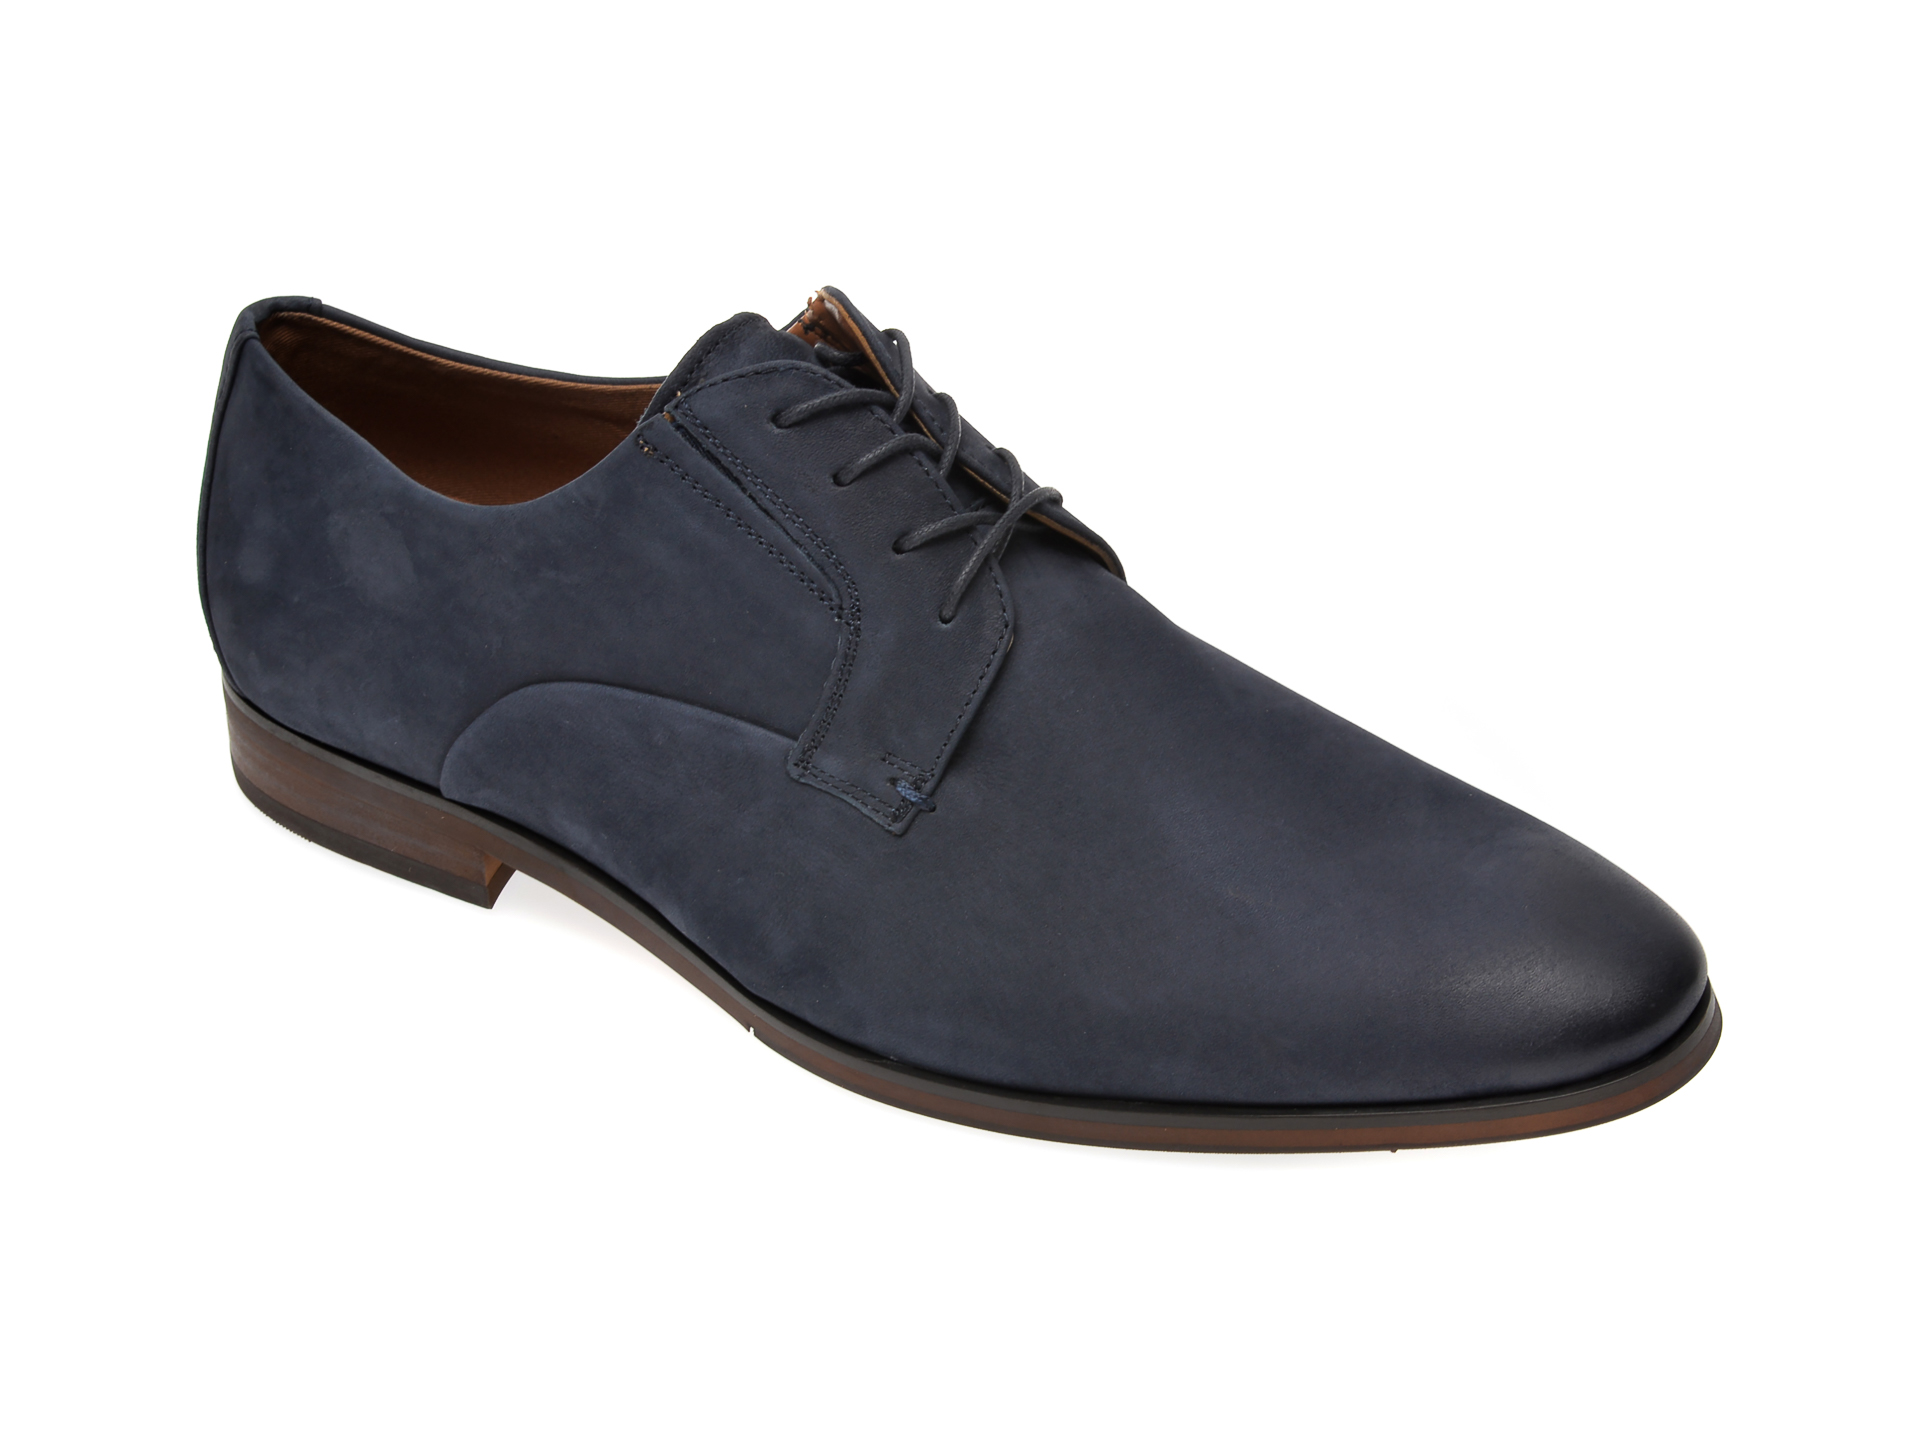 Pantofi ALDO bleumarin, Eowelalian410, din nabuc imagine Black Friday 2021